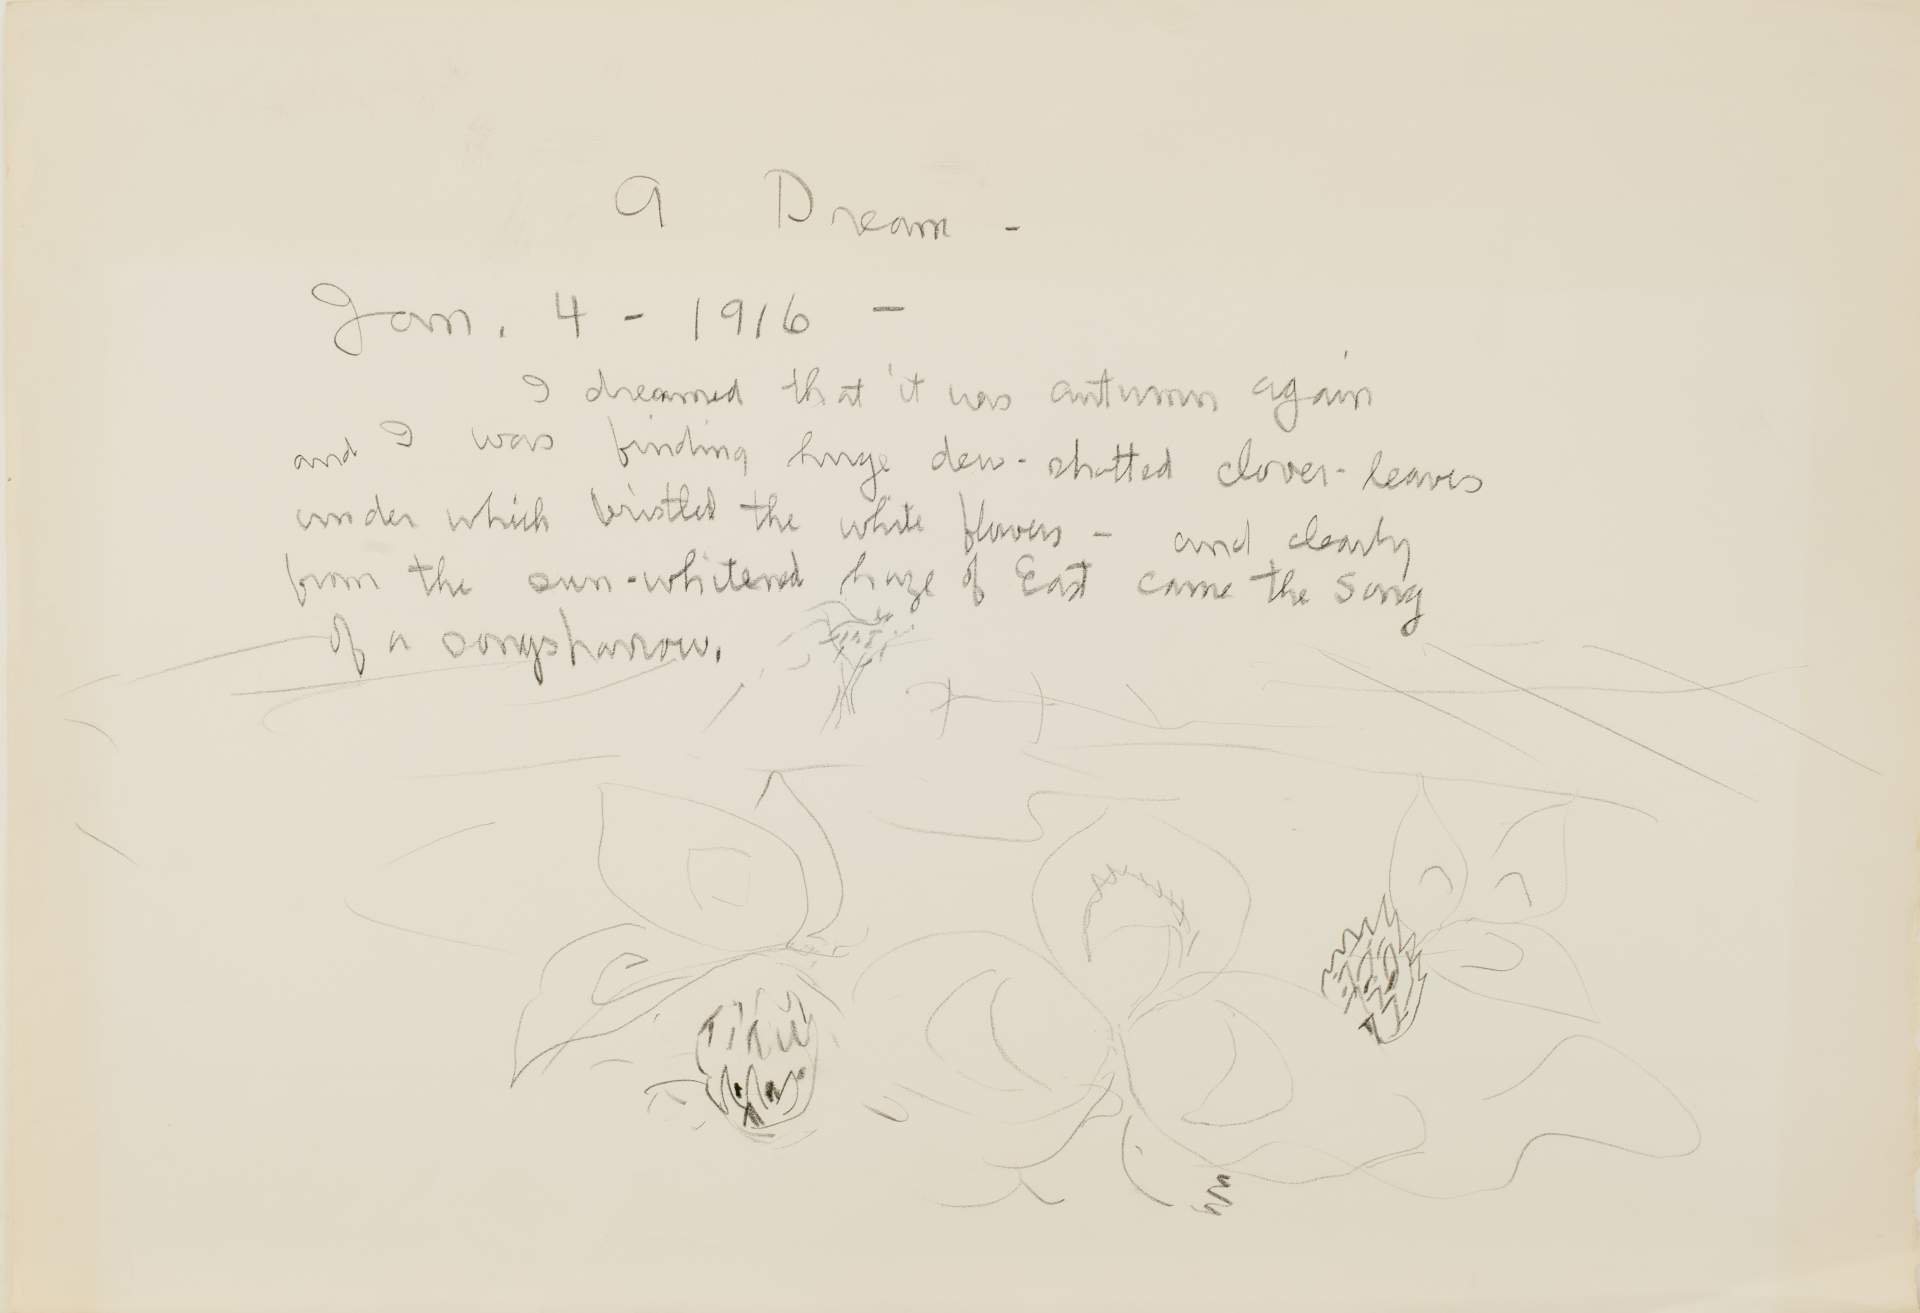 A Dream – Jan. 4 - 1916